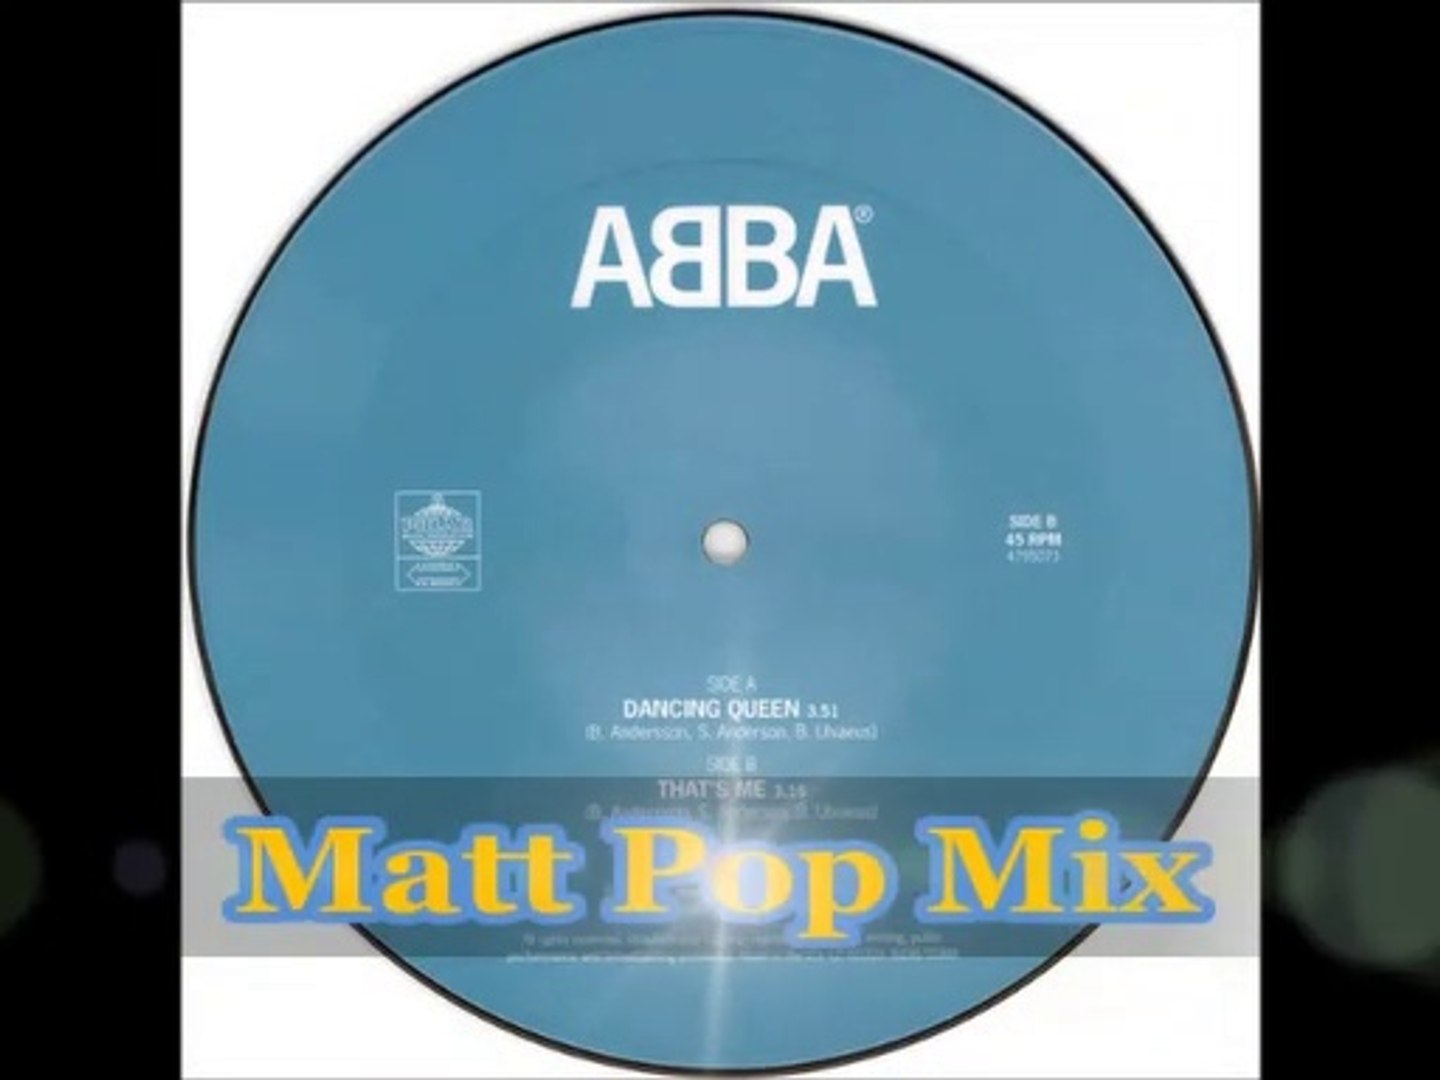 ABBA/Matt Pop Mixes by Robert - Dailymotion